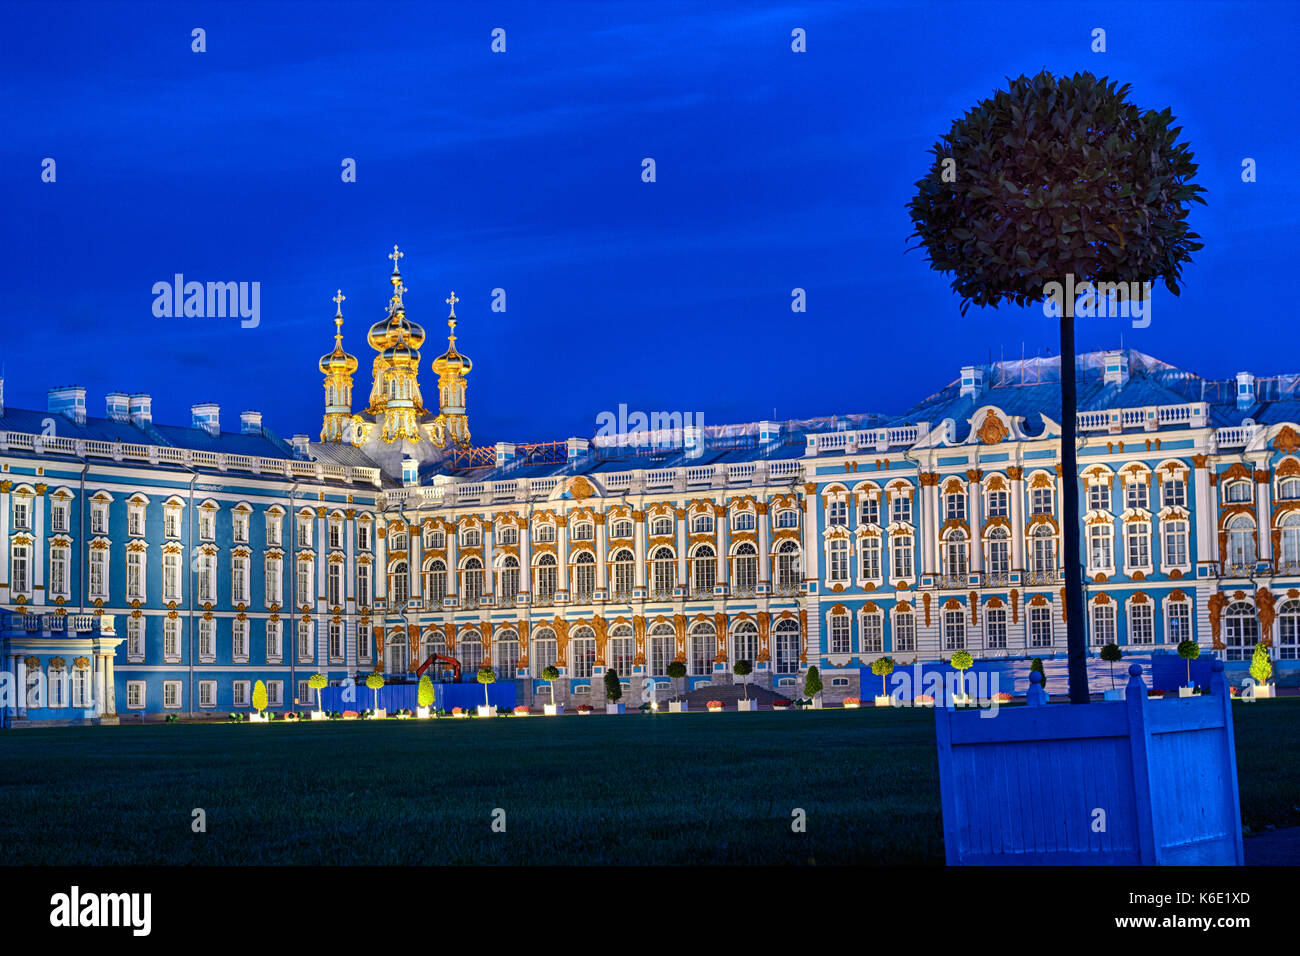 In tarda serata presso il Palazzo di Caterina la residenza estiva degli Zar russo a Pushkin, San Pietroburgo. square e alberi Foto Stock